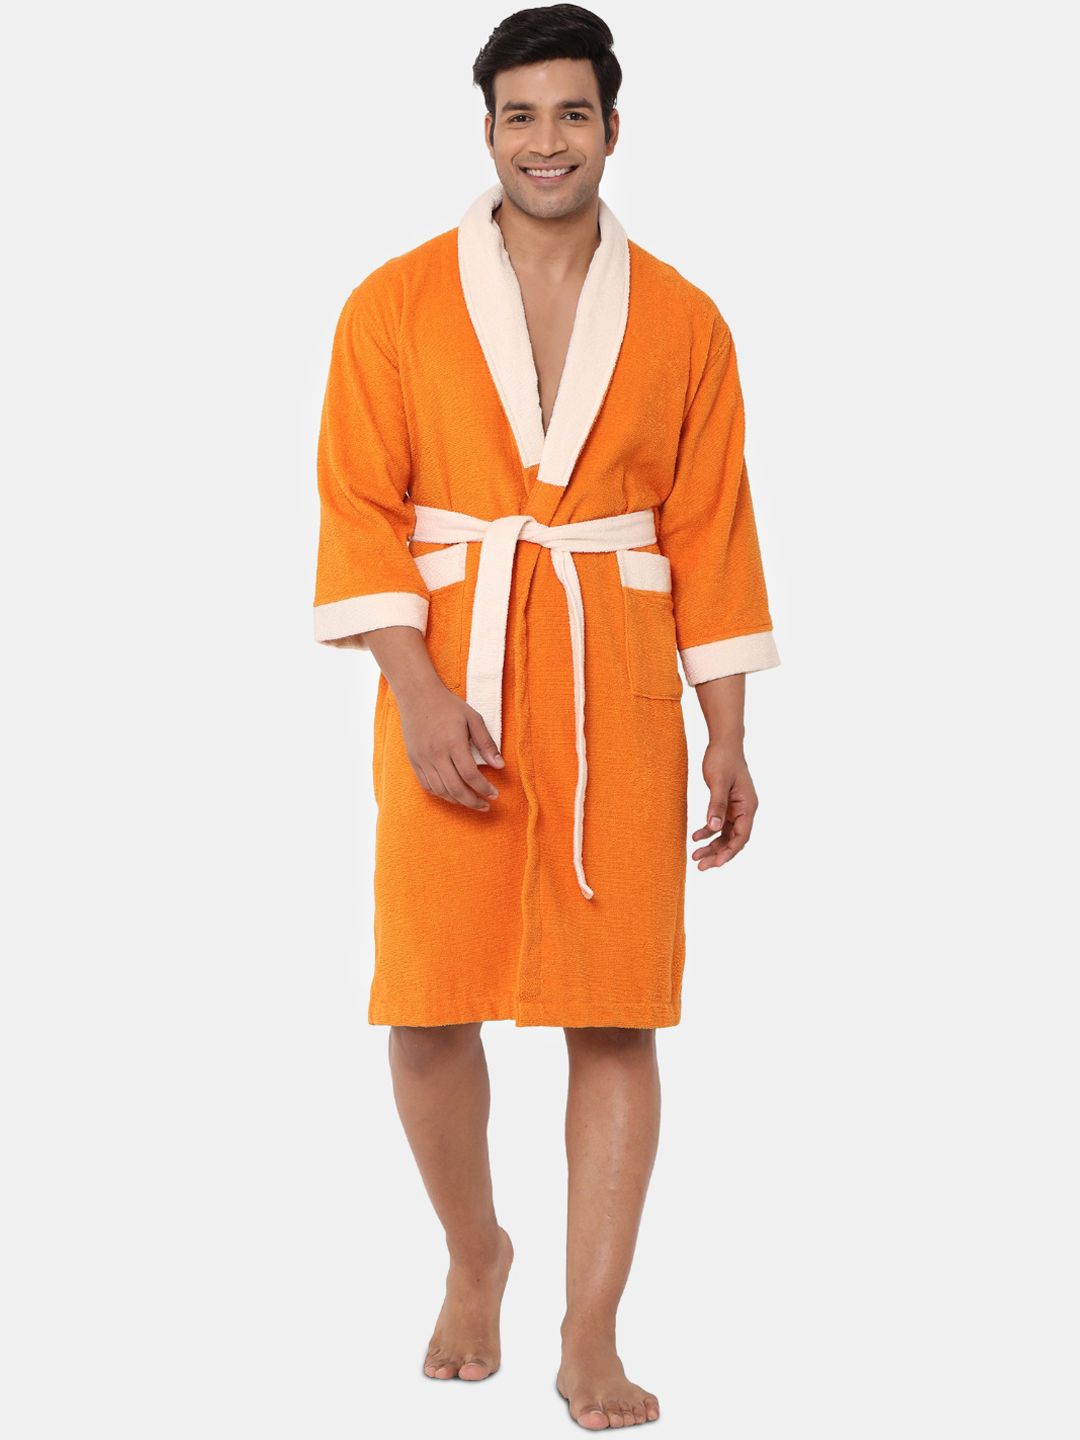 SPACES Unisex Orange Solid 100% Cotton 300 GSM Bath Robe Price in India